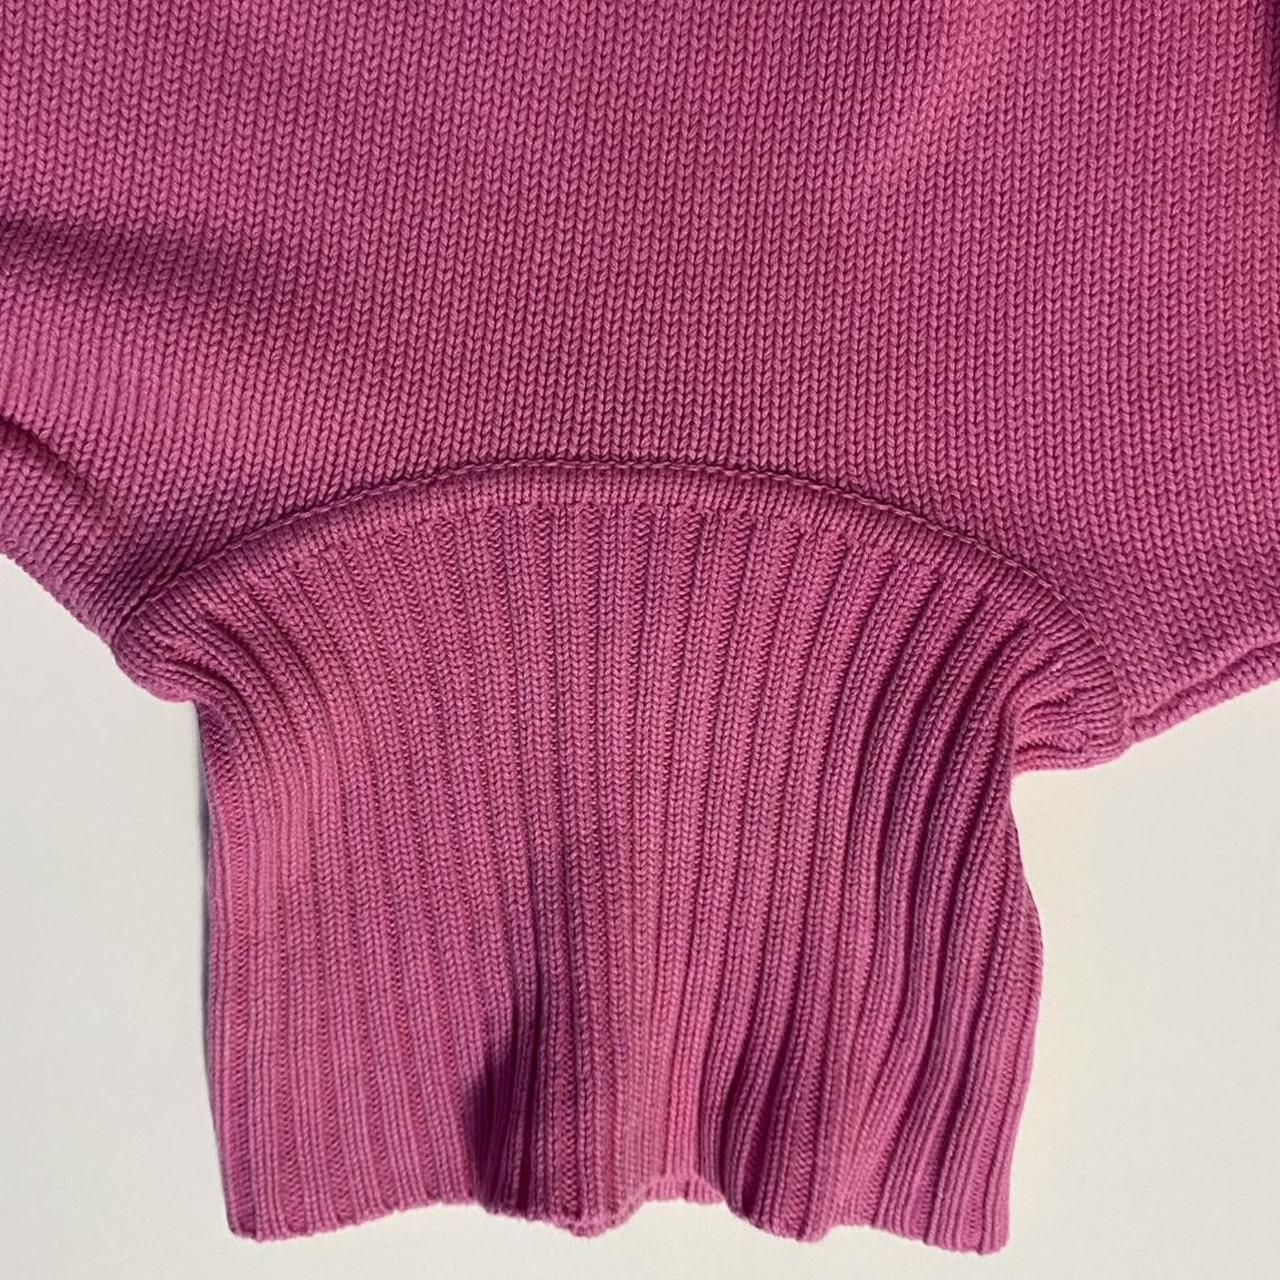 Polo Ralph Lauren Women's Pink and Green Jumper (6)